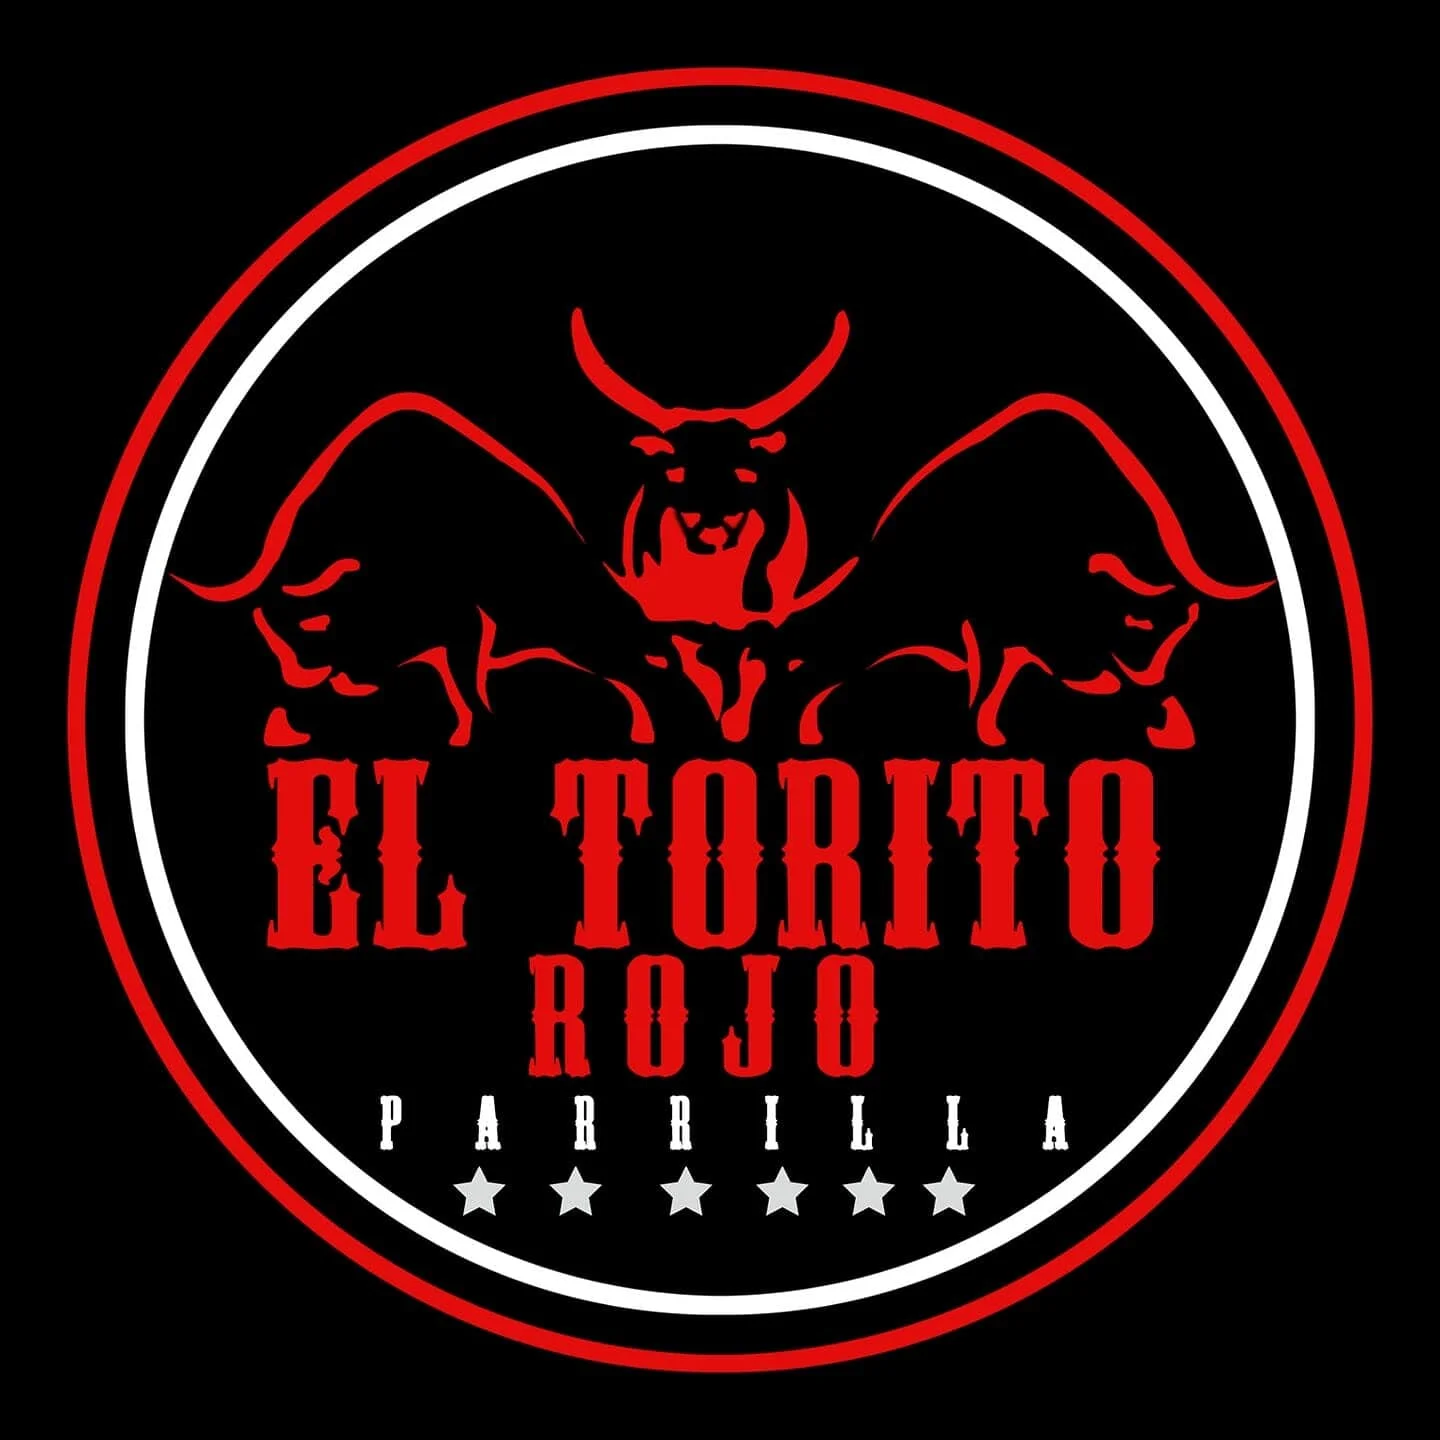 Parrilla Bar El Torito Rojo-7549